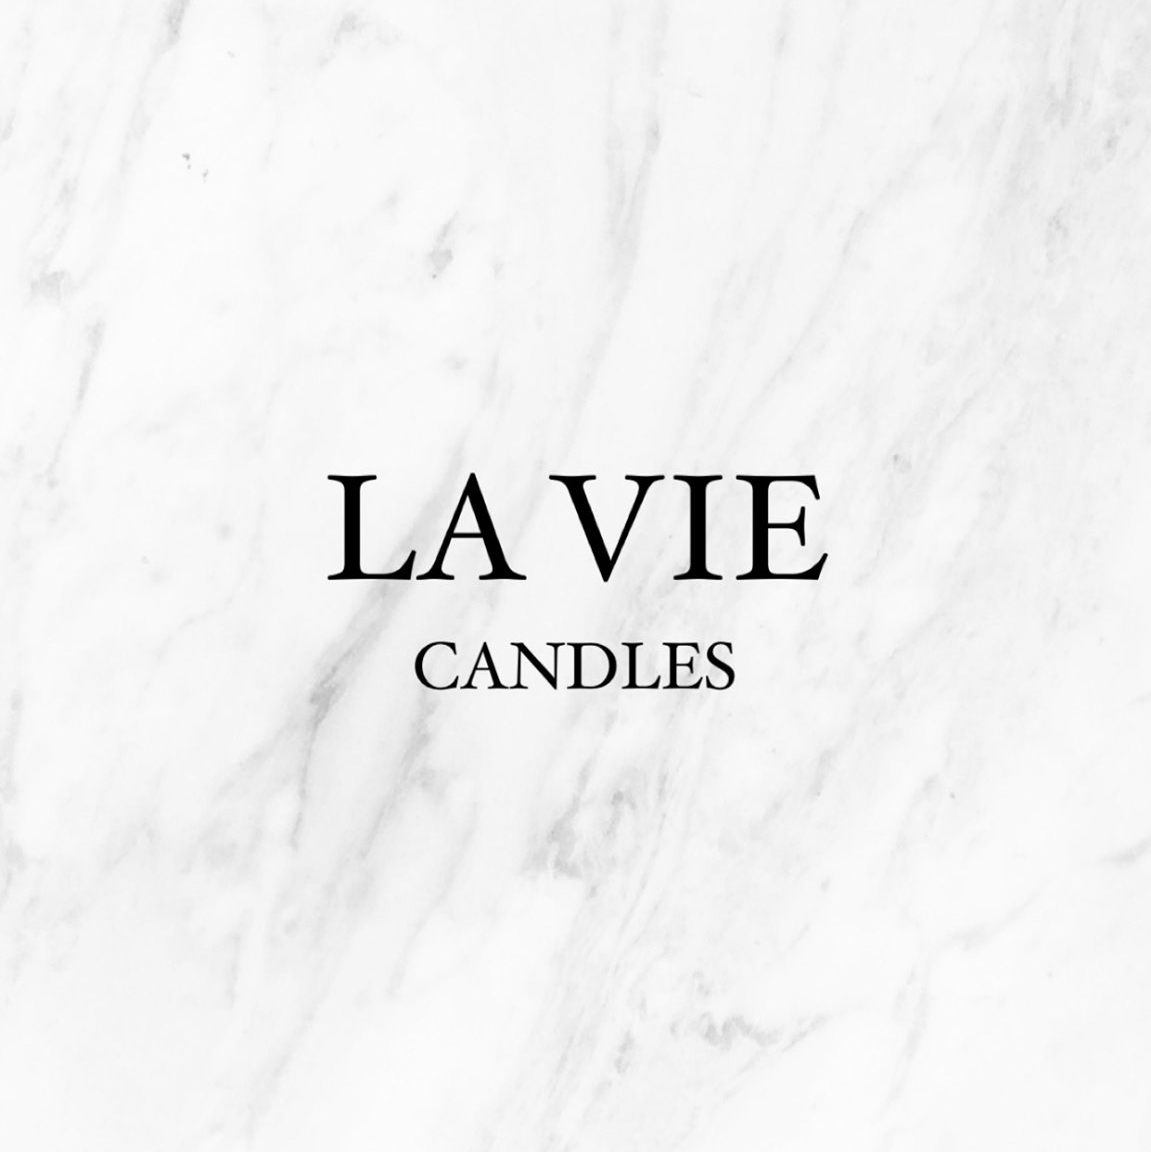 La Vie Candles Coupons